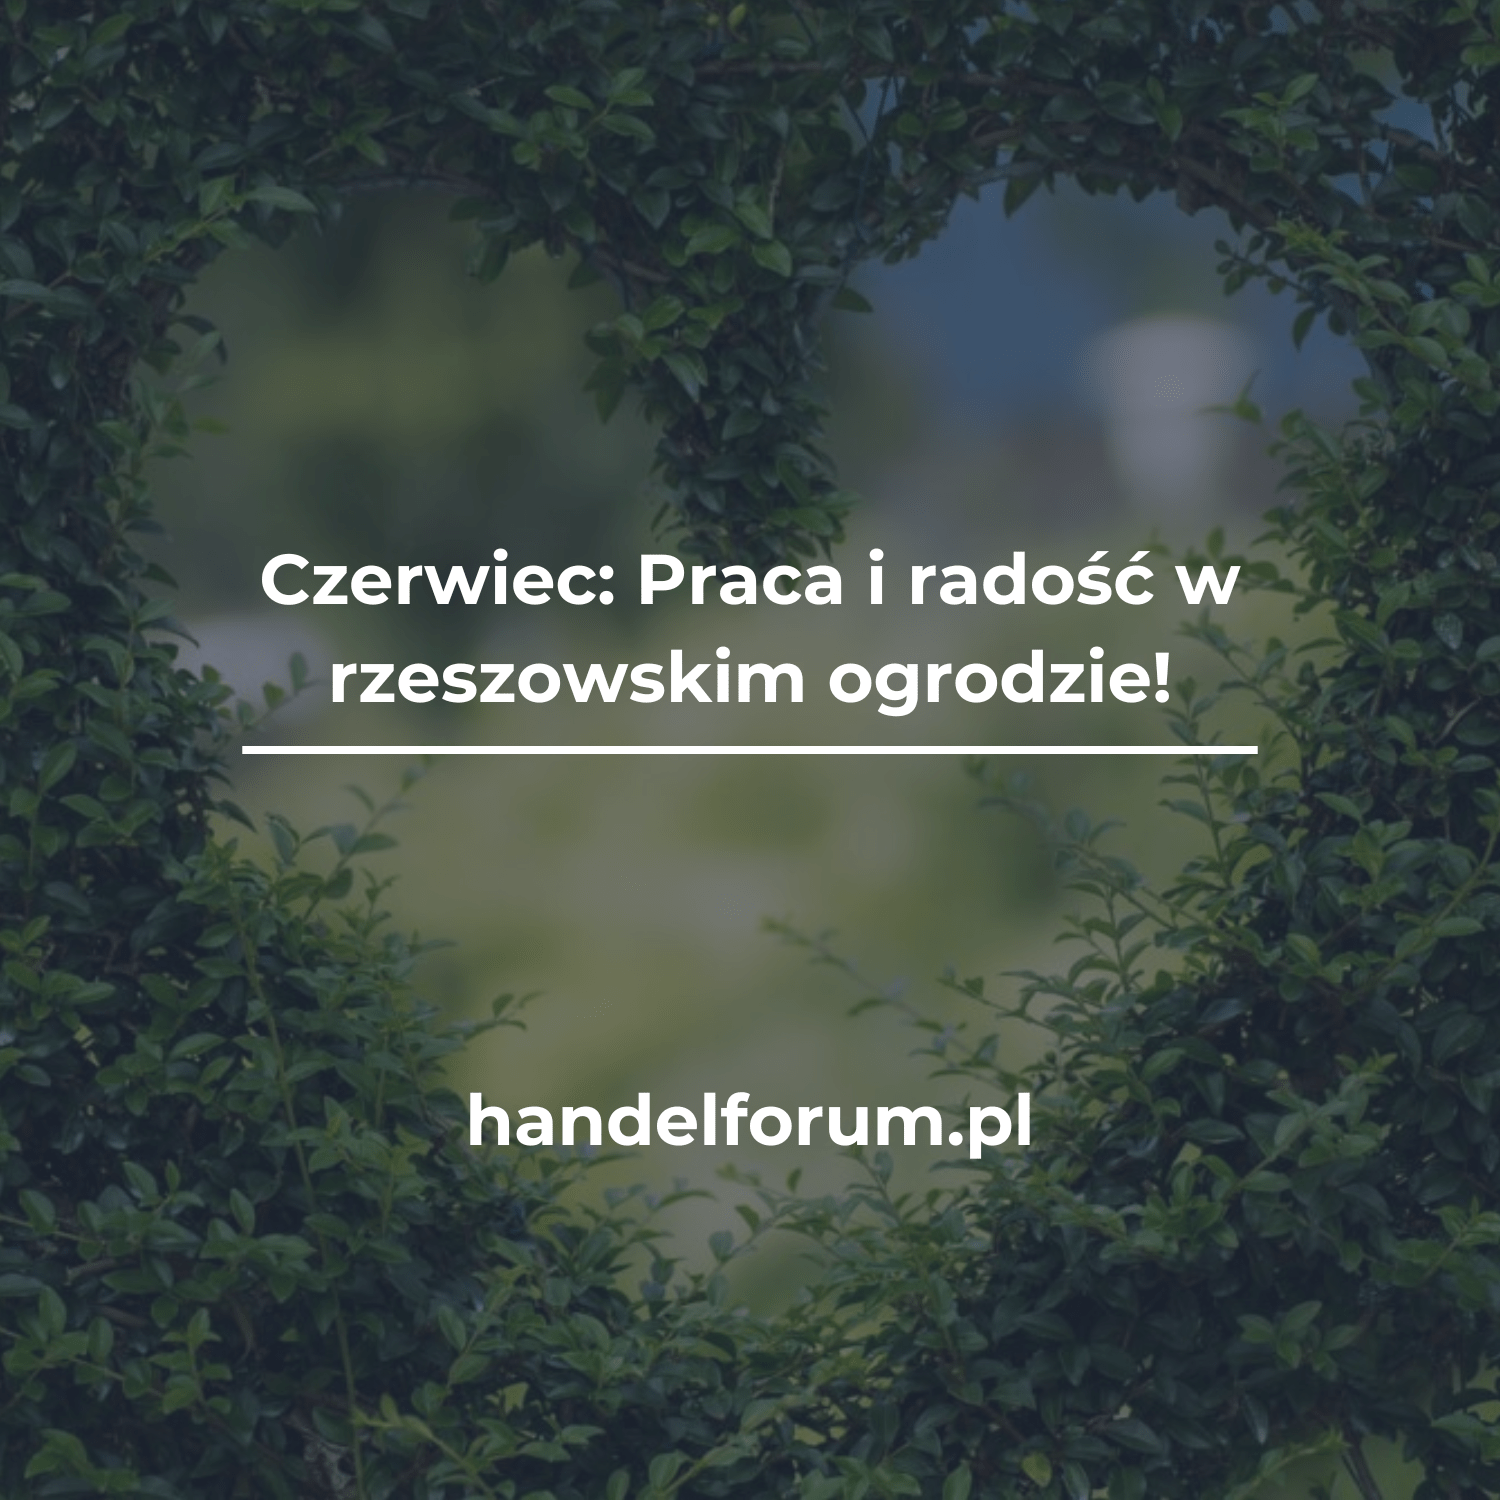 Czerwiec: Praca i radość w rzeszowskim ogrodzie!